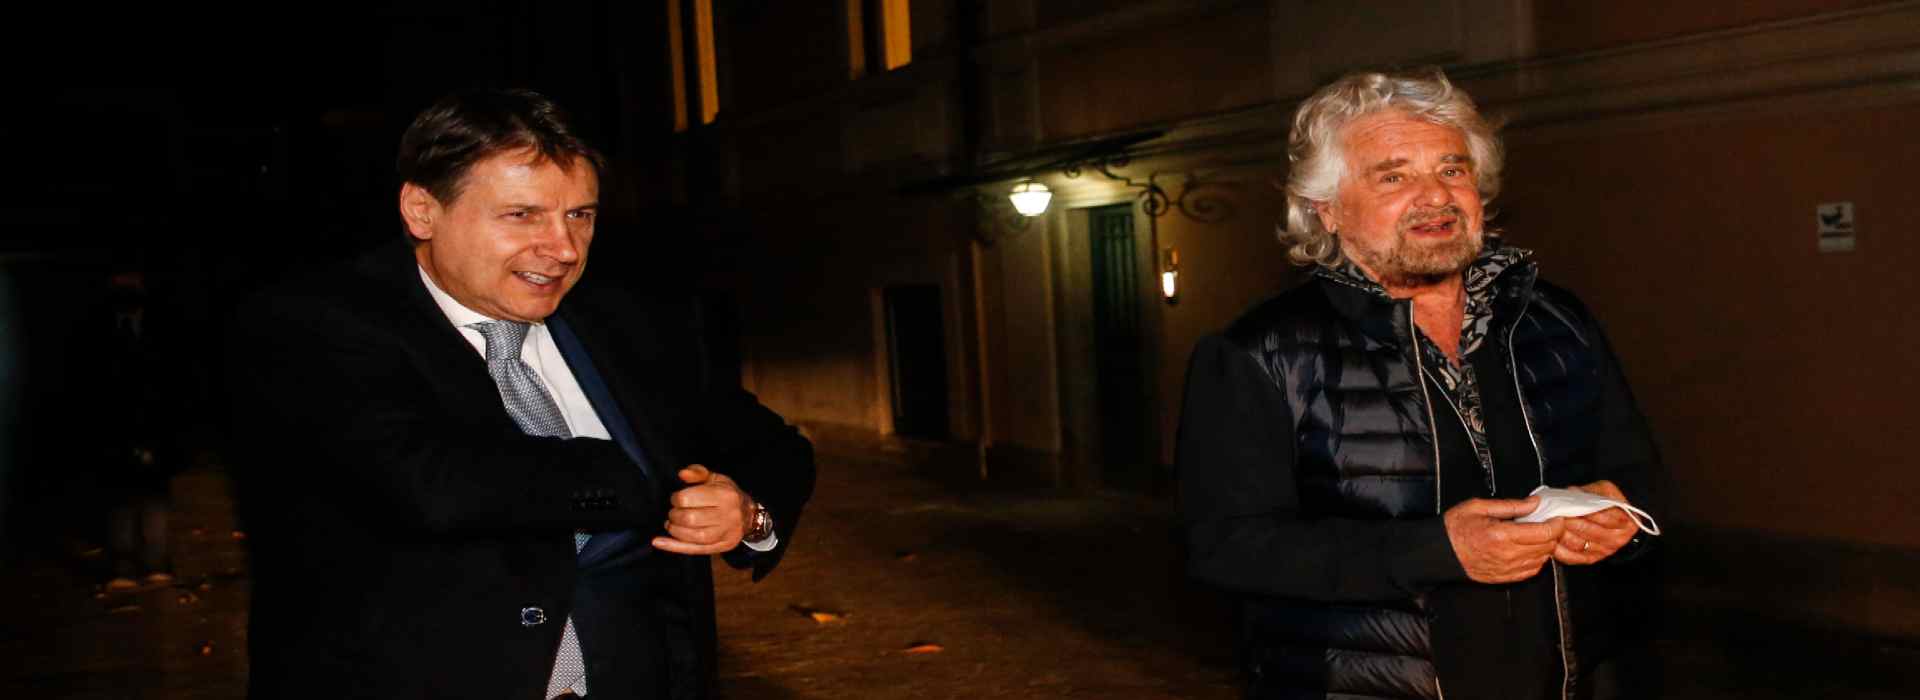 Conte assume Grillo a 200mila euro. Il caso Monti da 140mila euro e la guerra dei parlamentari